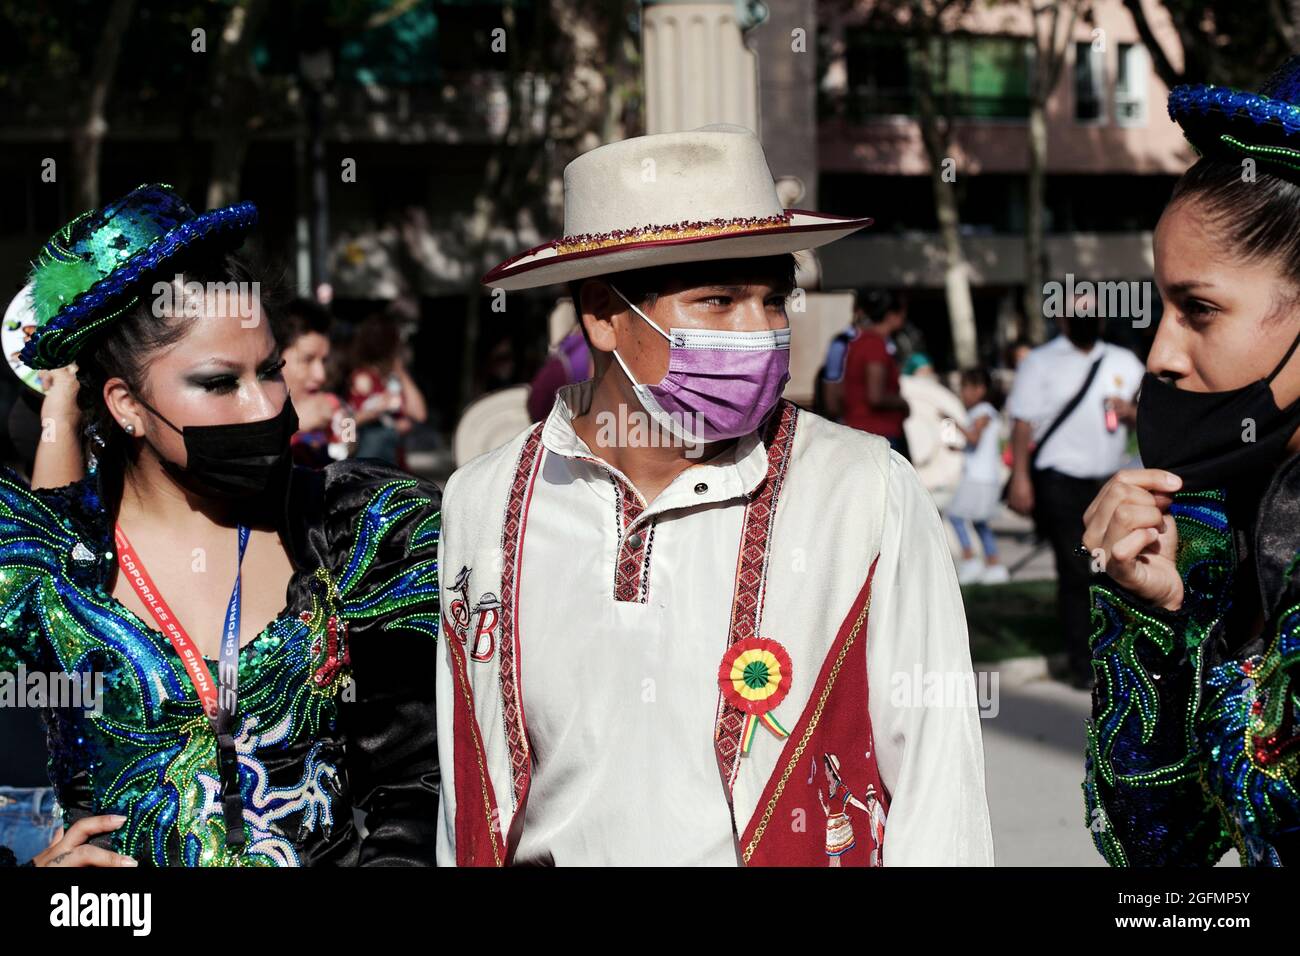 Boliviens en costume national lors d'une célébration de la culture bolivienne, Barcelone, Espagne. Banque D'Images